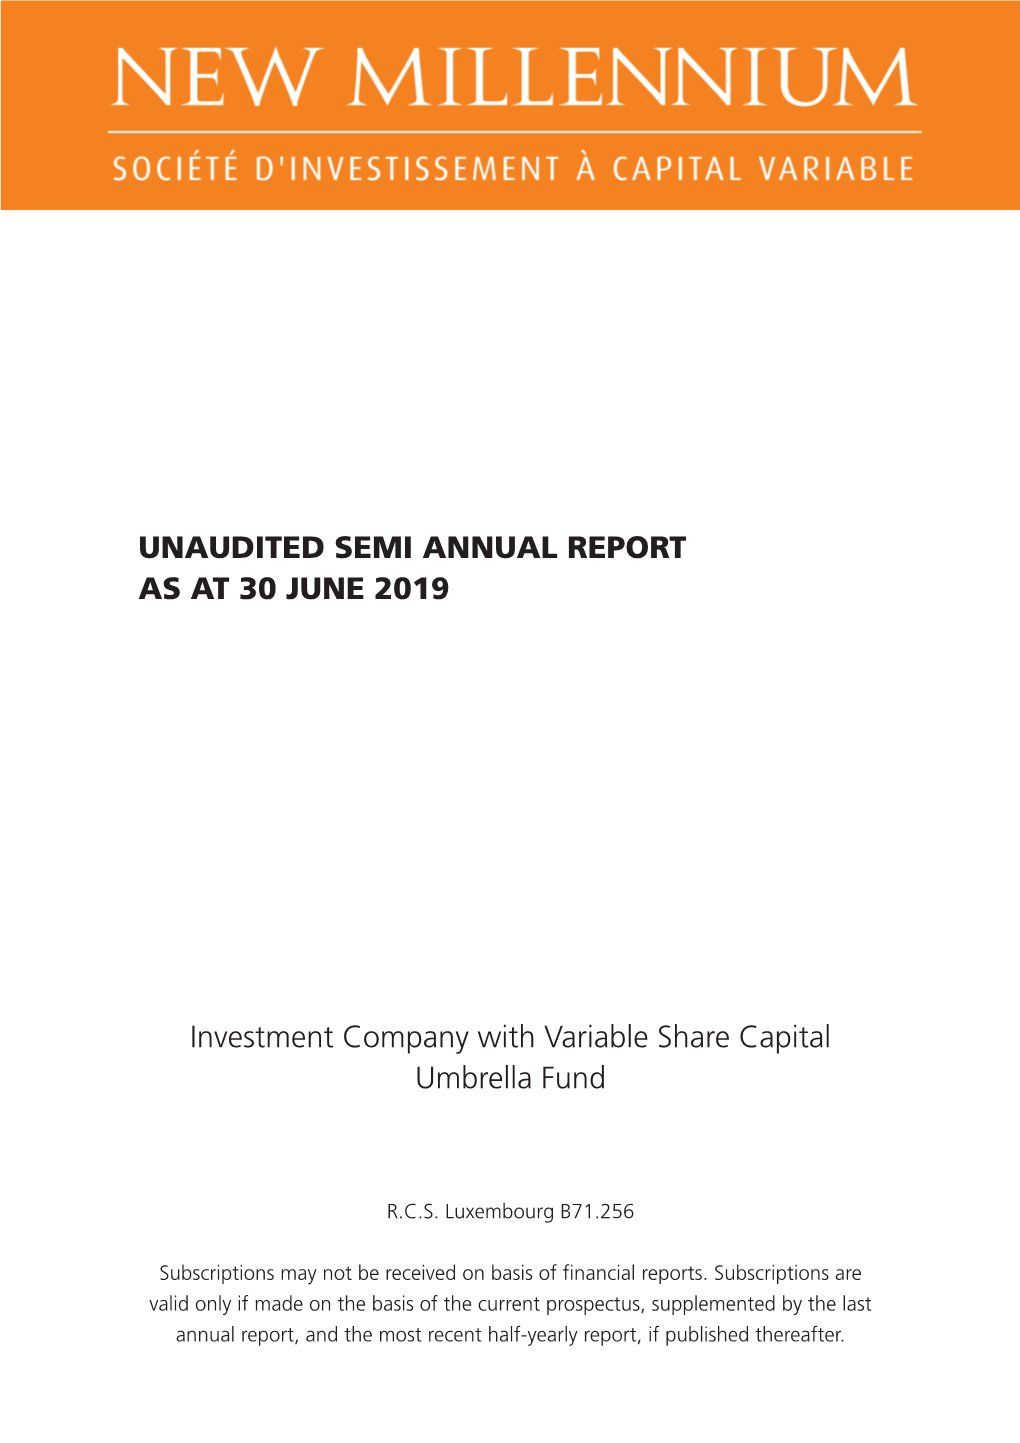 Unaudited Semi Annual Report As at 30 June 2019